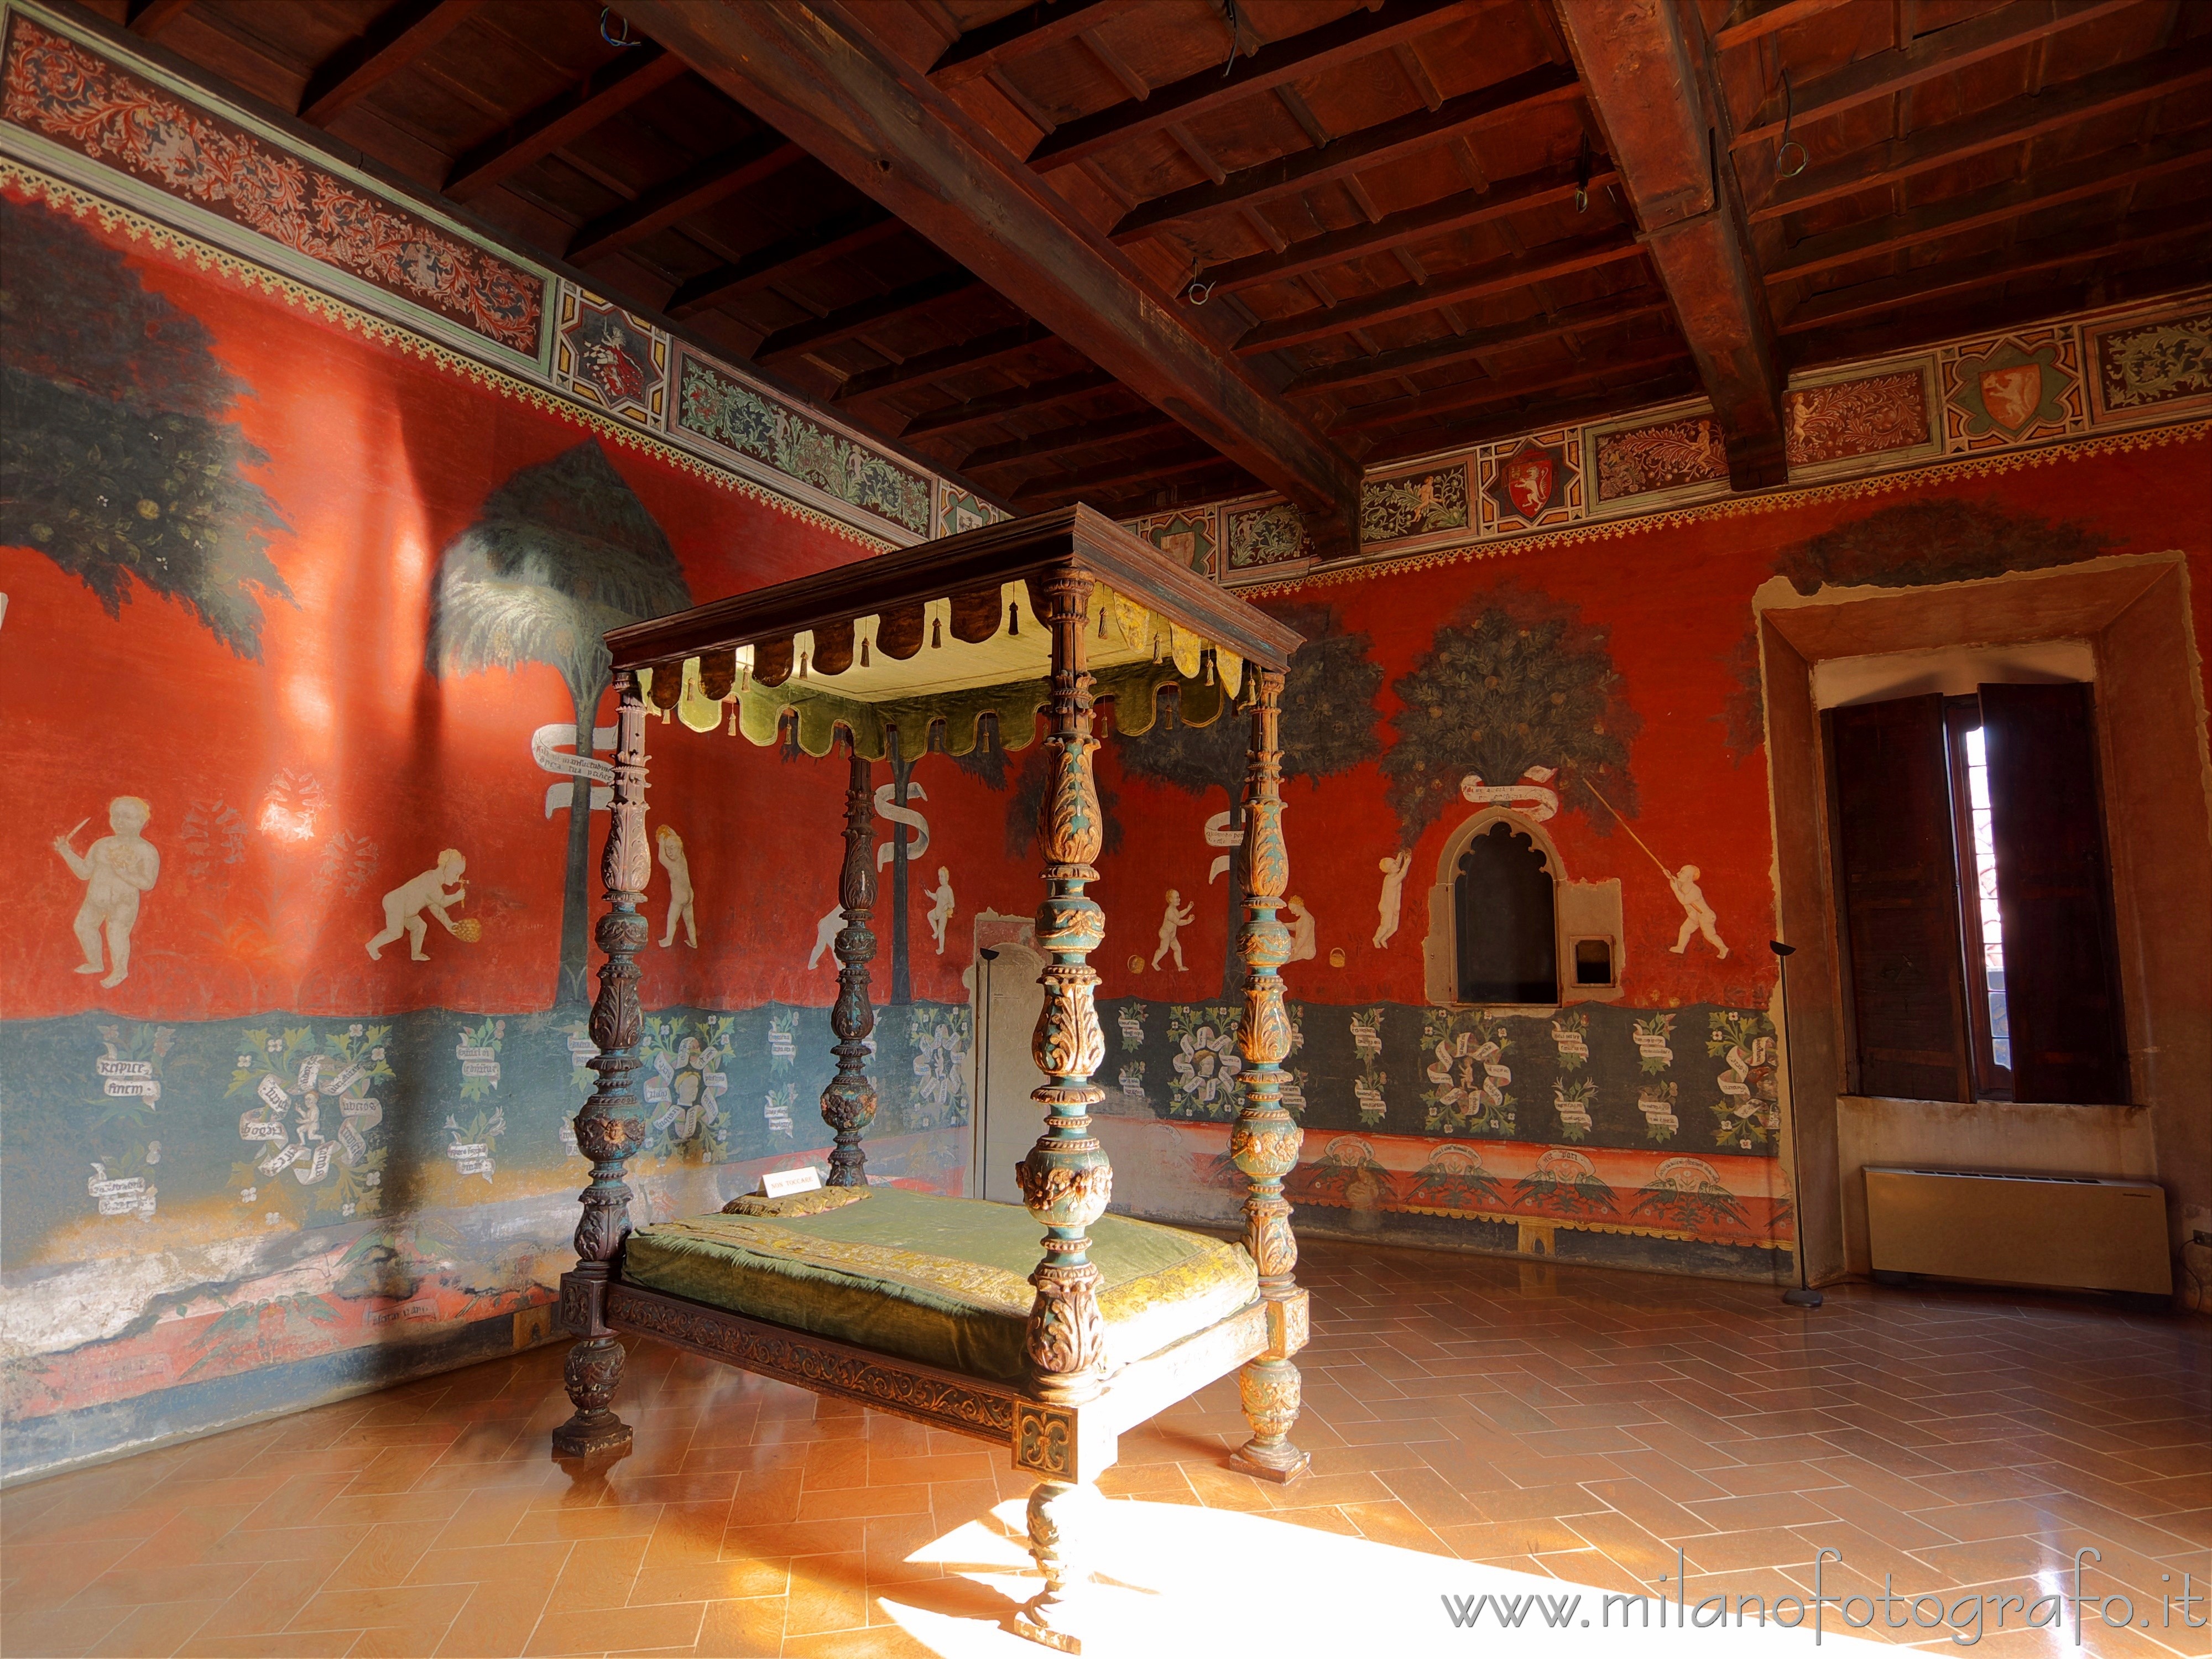 Castiglione Olona (Varese, Italy): Room of the Cardinal in Branda Palace - Castiglione Olona (Varese, Italy)